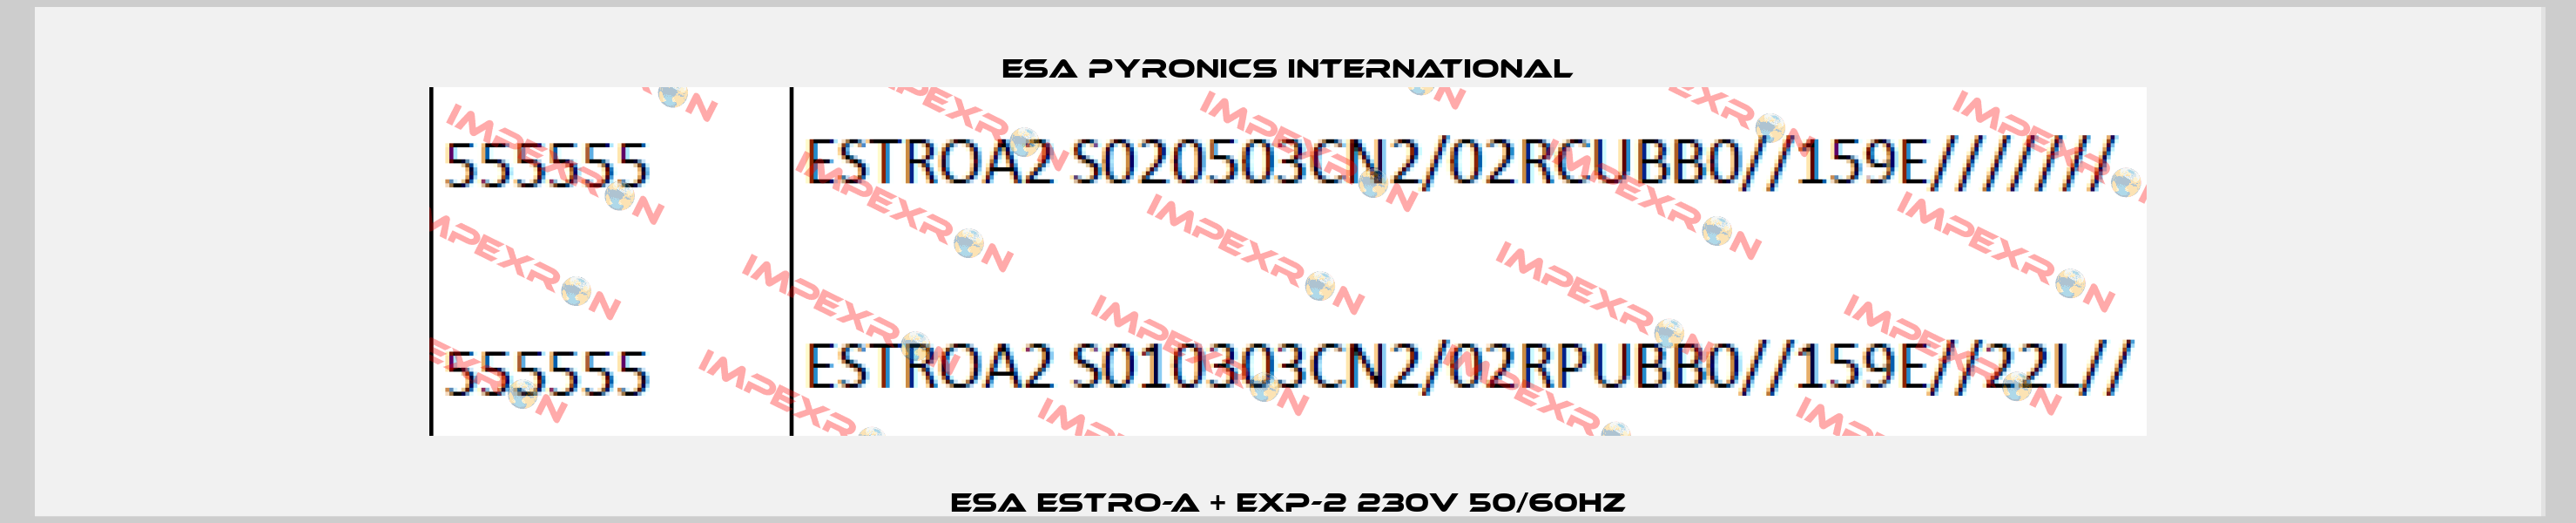 ESA ESTRO-A + EXP-2 230V 50/60Hz ESA Pyronics International